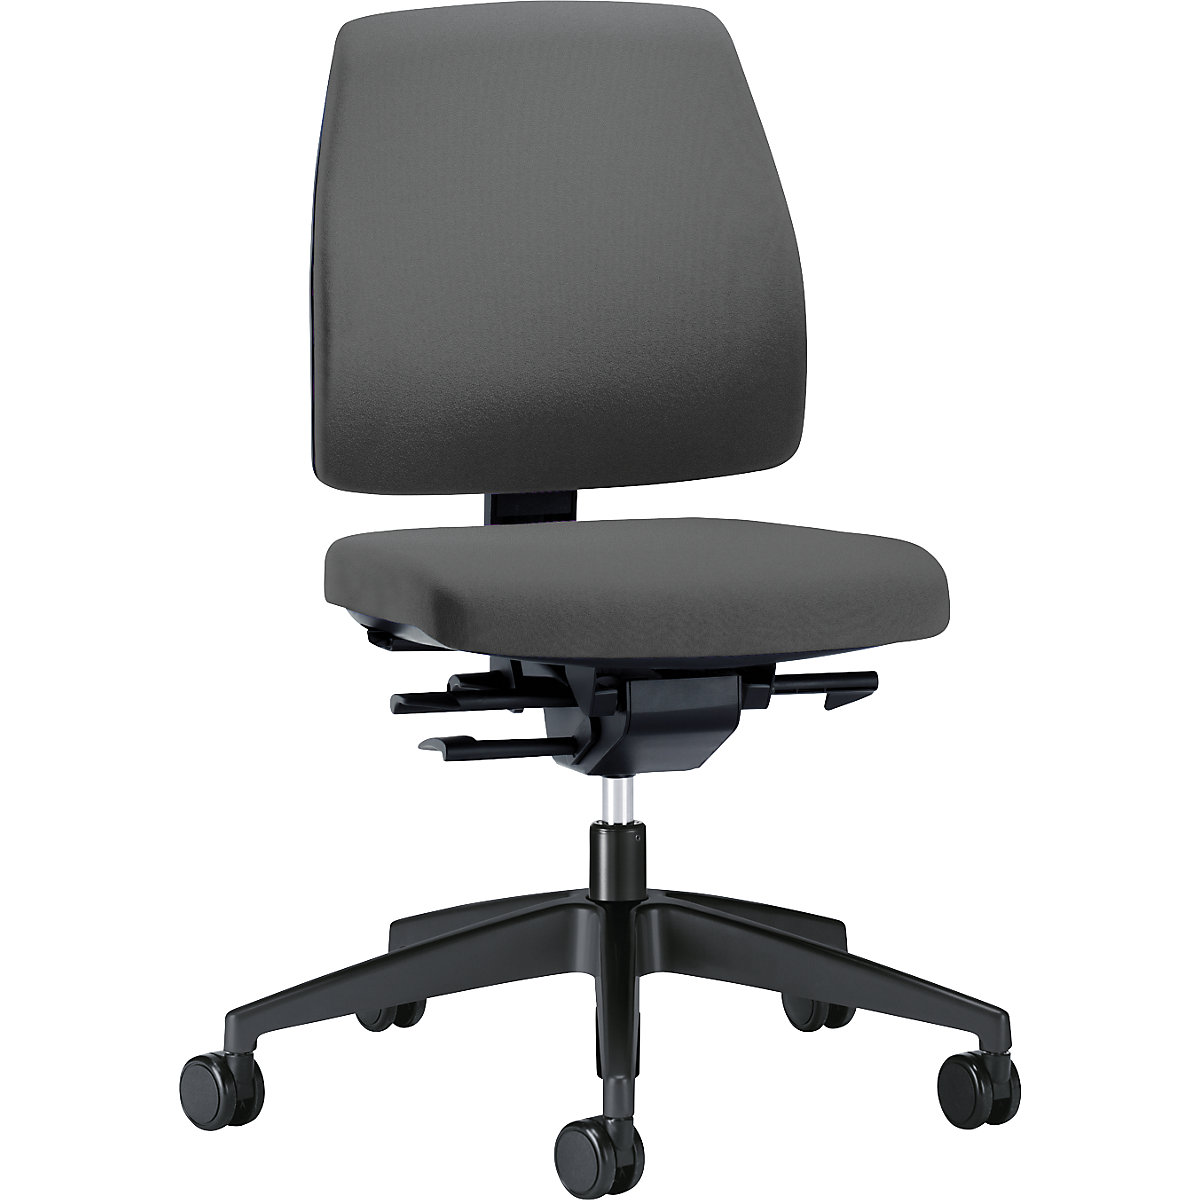 Bürodrehstuhl GOAL, Rückenlehnenhöhe 430 mm interstuhl, Gestell schwarz, mit harten Rollen, eisengrau, Sitztiefe 410 mm-2